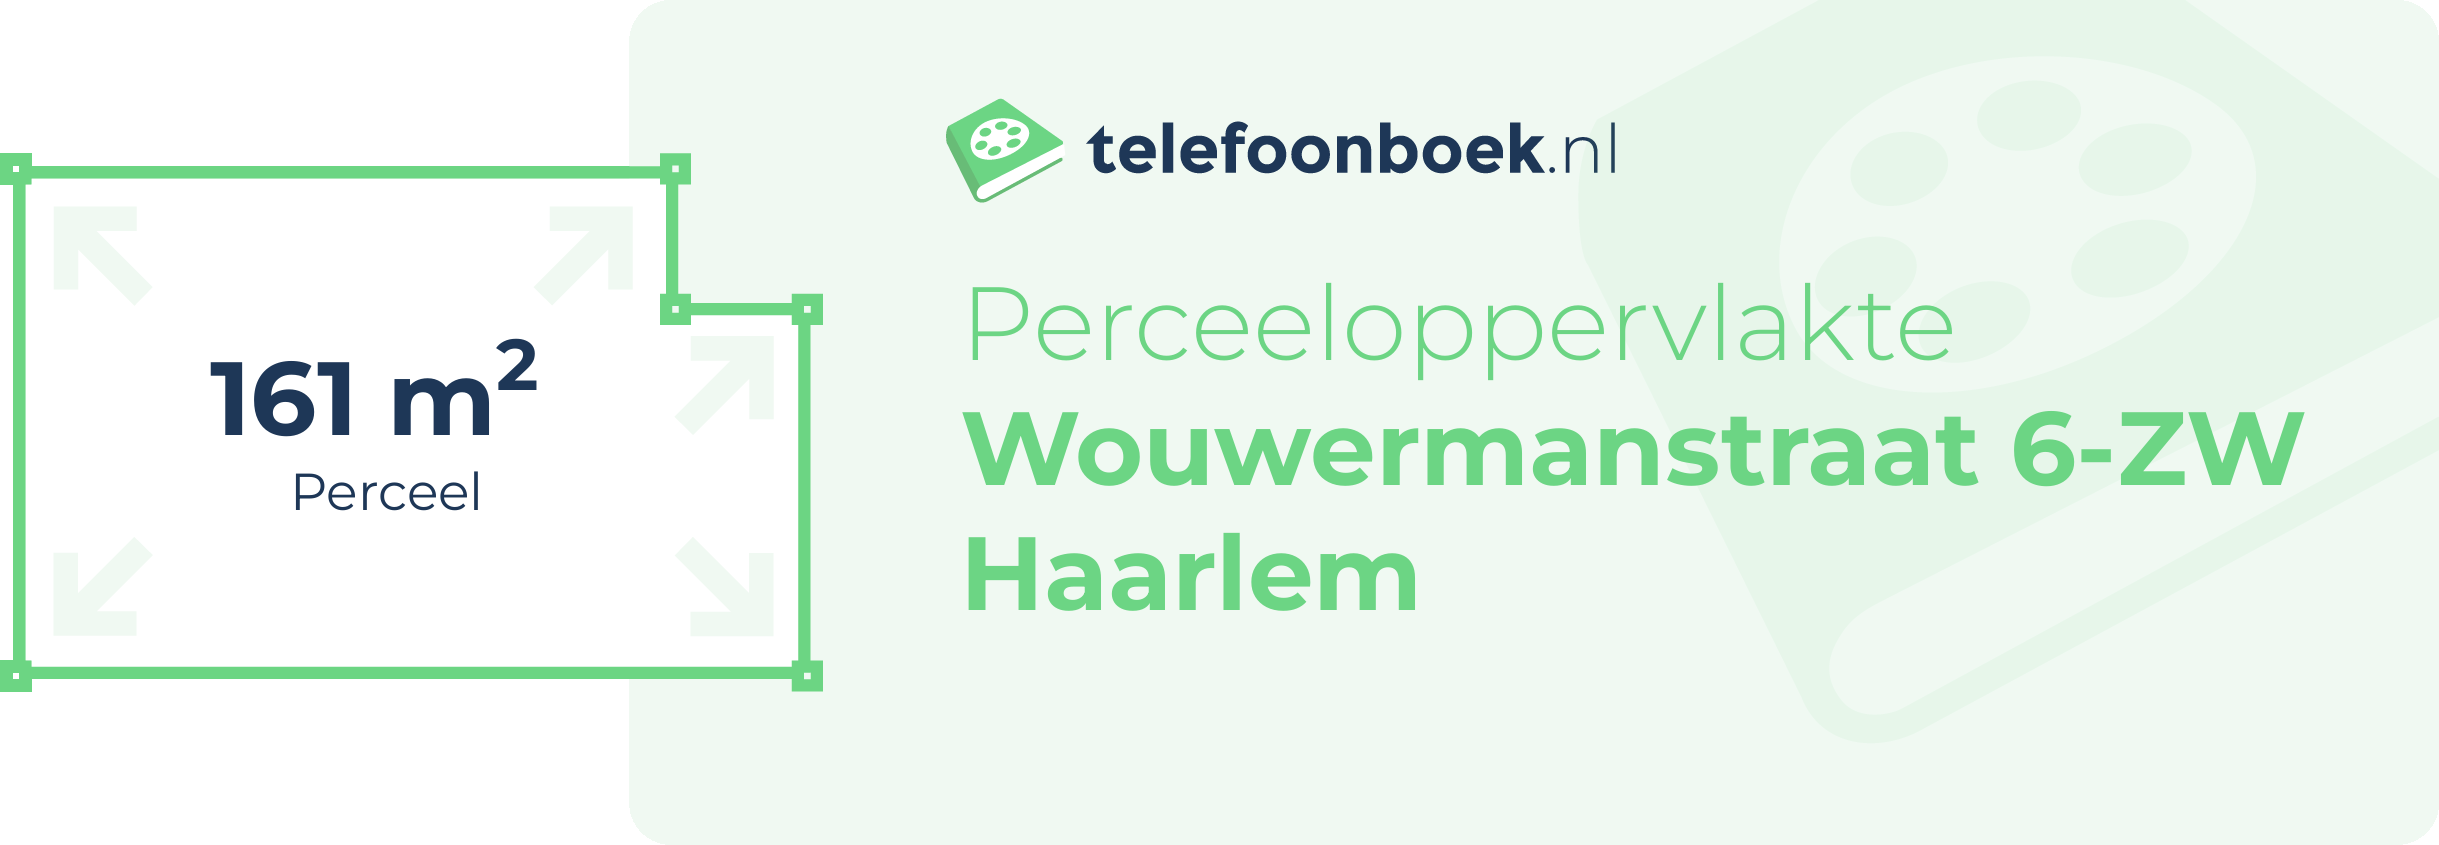 Perceeloppervlakte Wouwermanstraat 6-ZW Haarlem